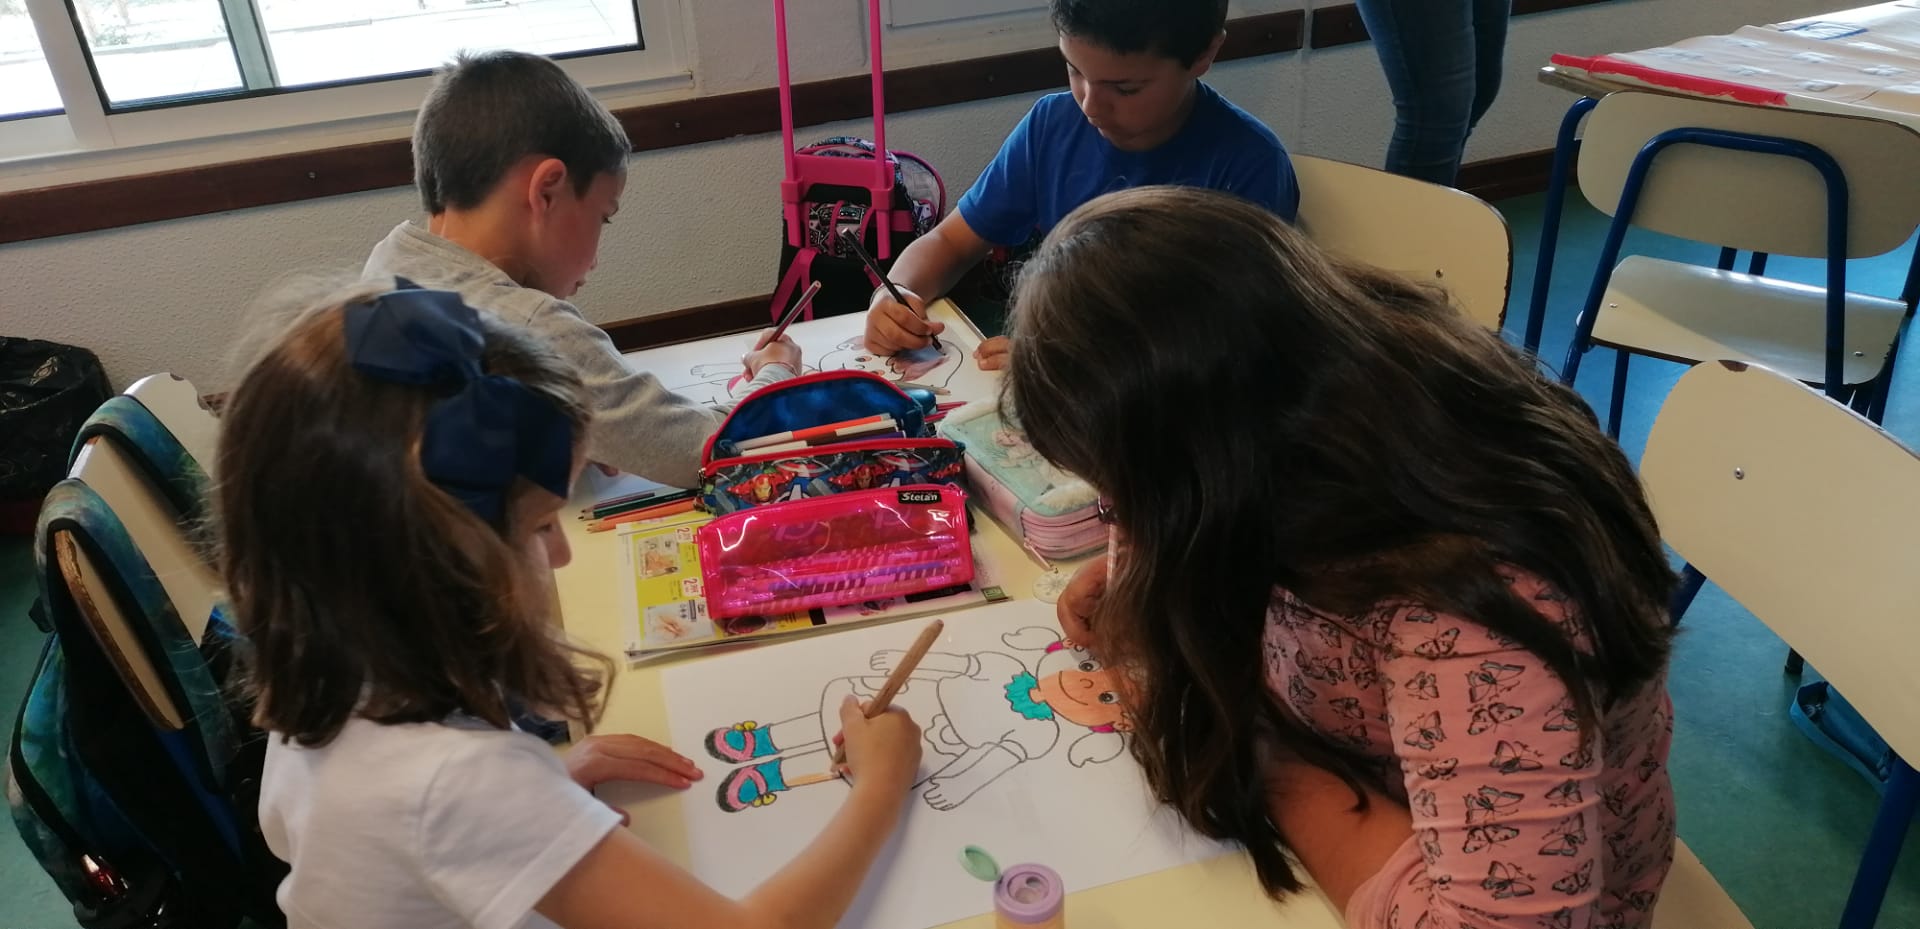 Os desenhos para a construção dos fantoches foram fornecidos pela professora da turma, mas foram as crianças que pintaram em trabalho de grupo.